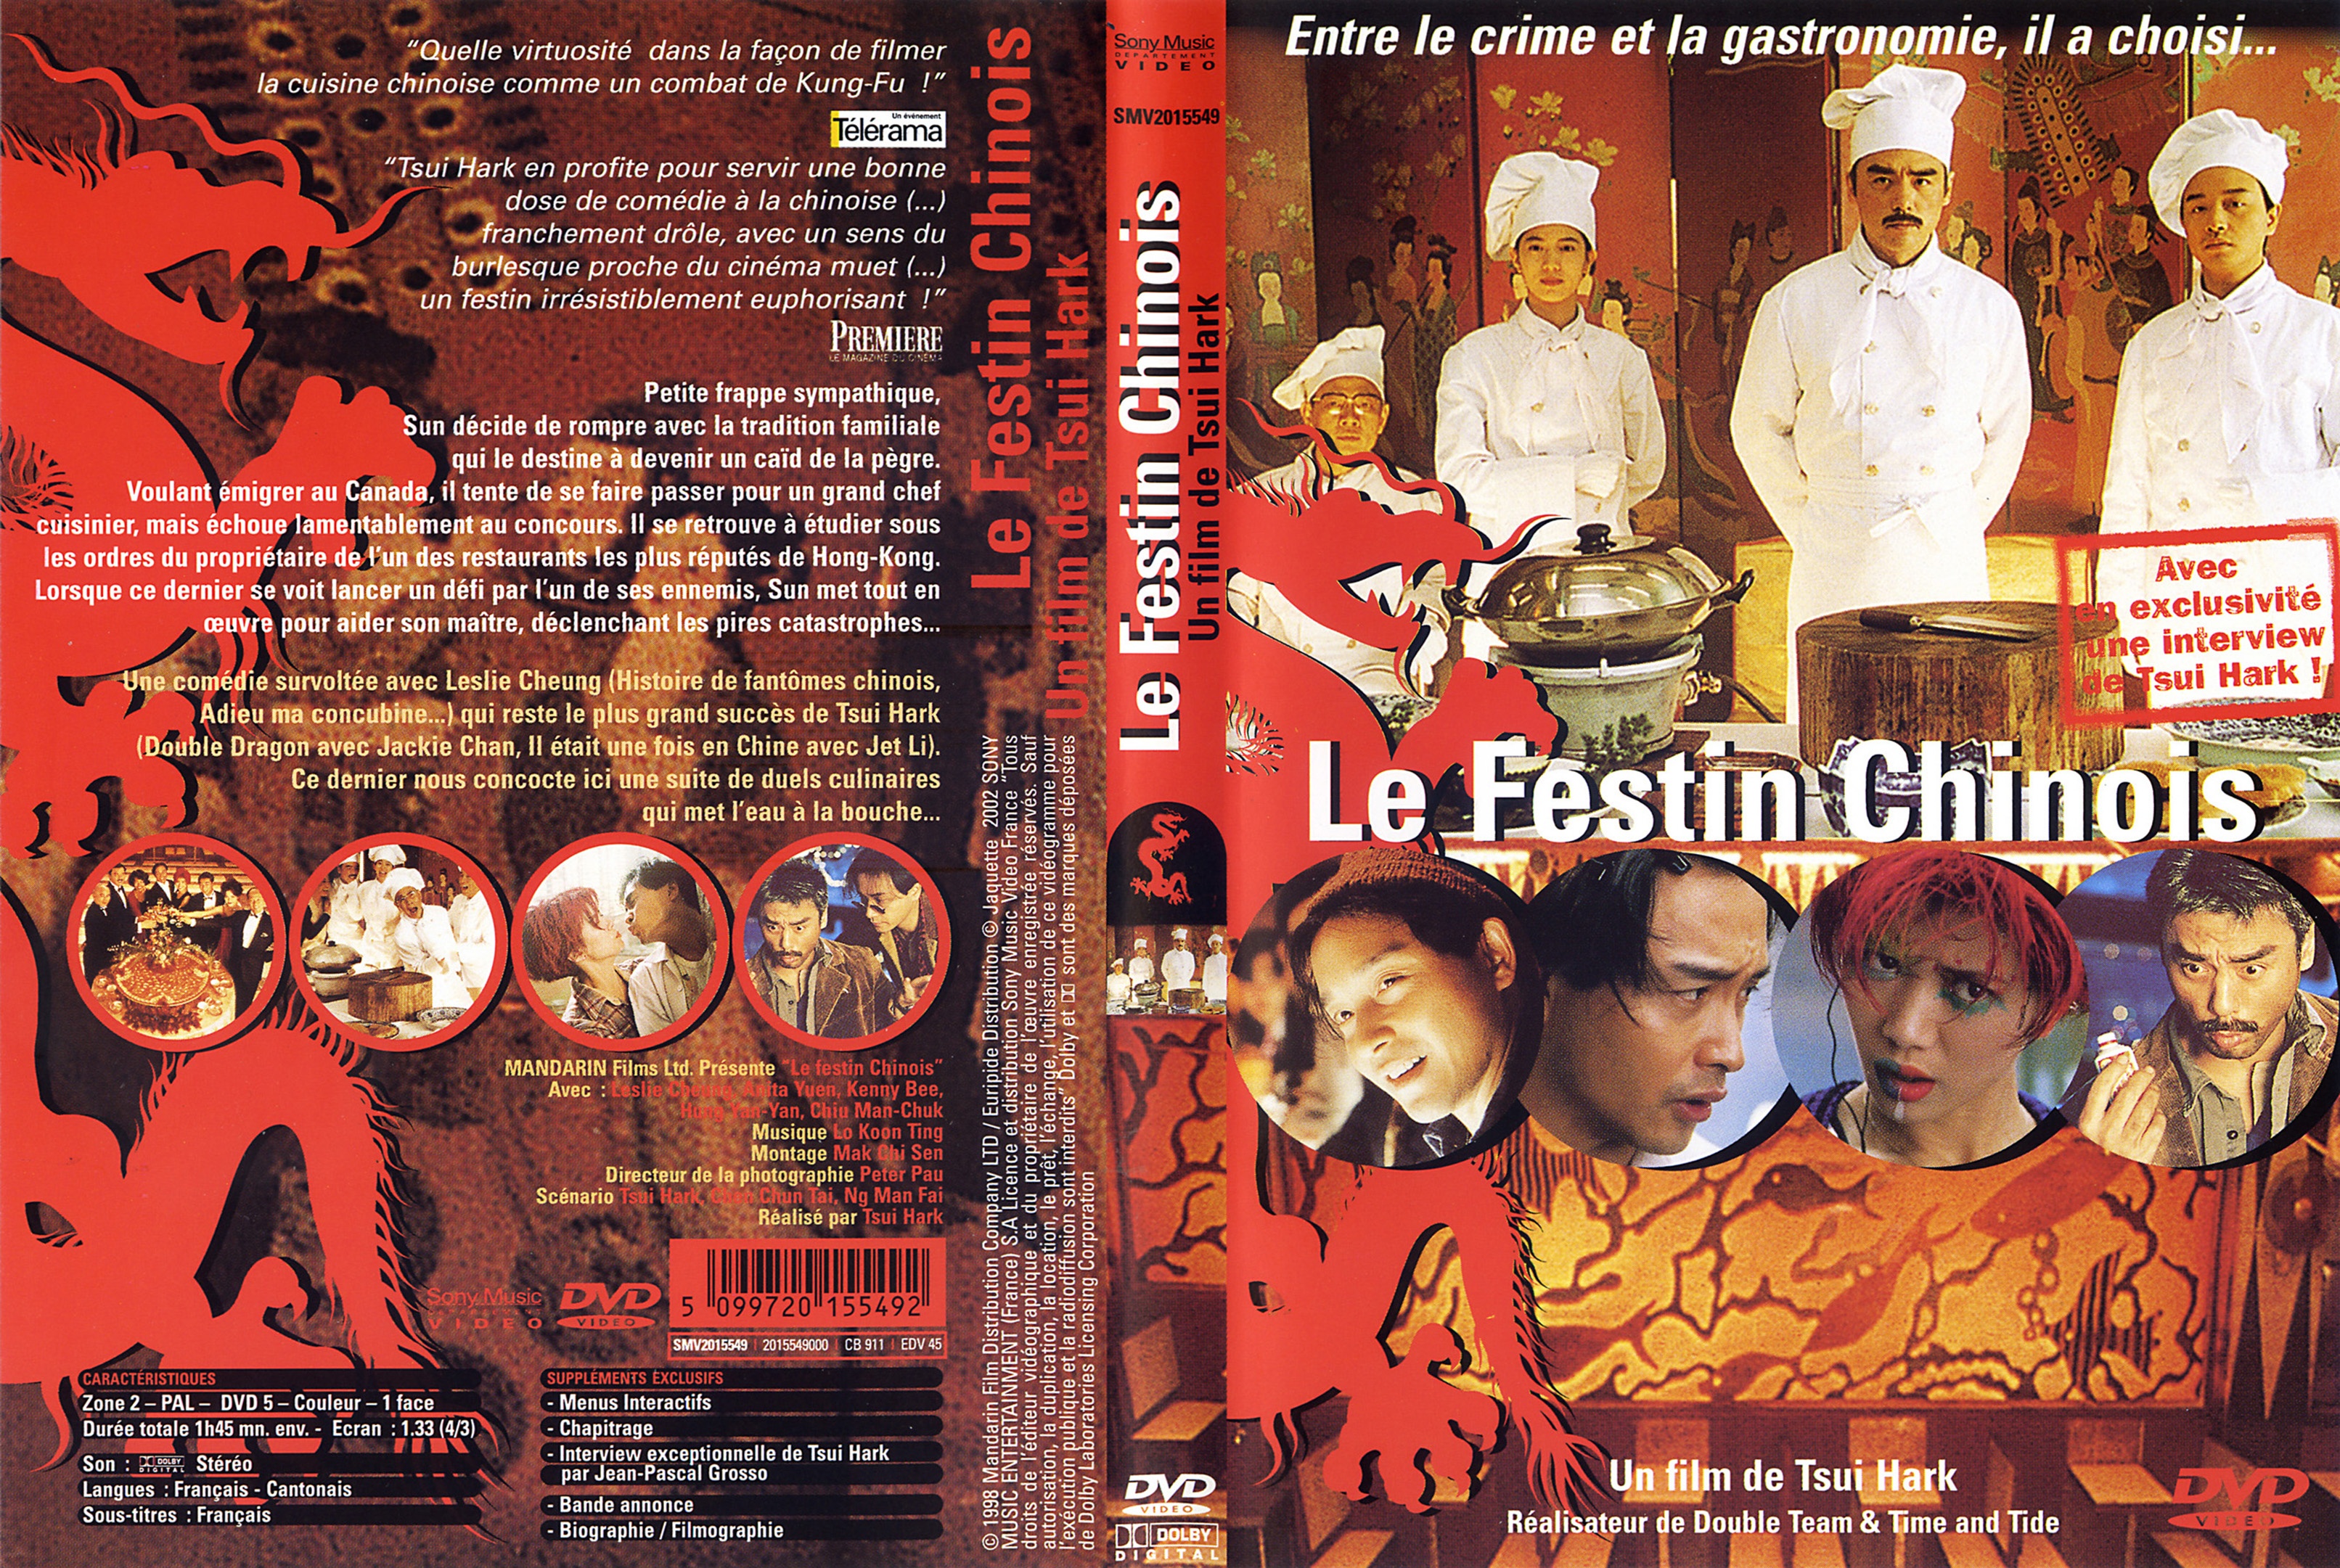 Jaquette DVD Le festin chinois